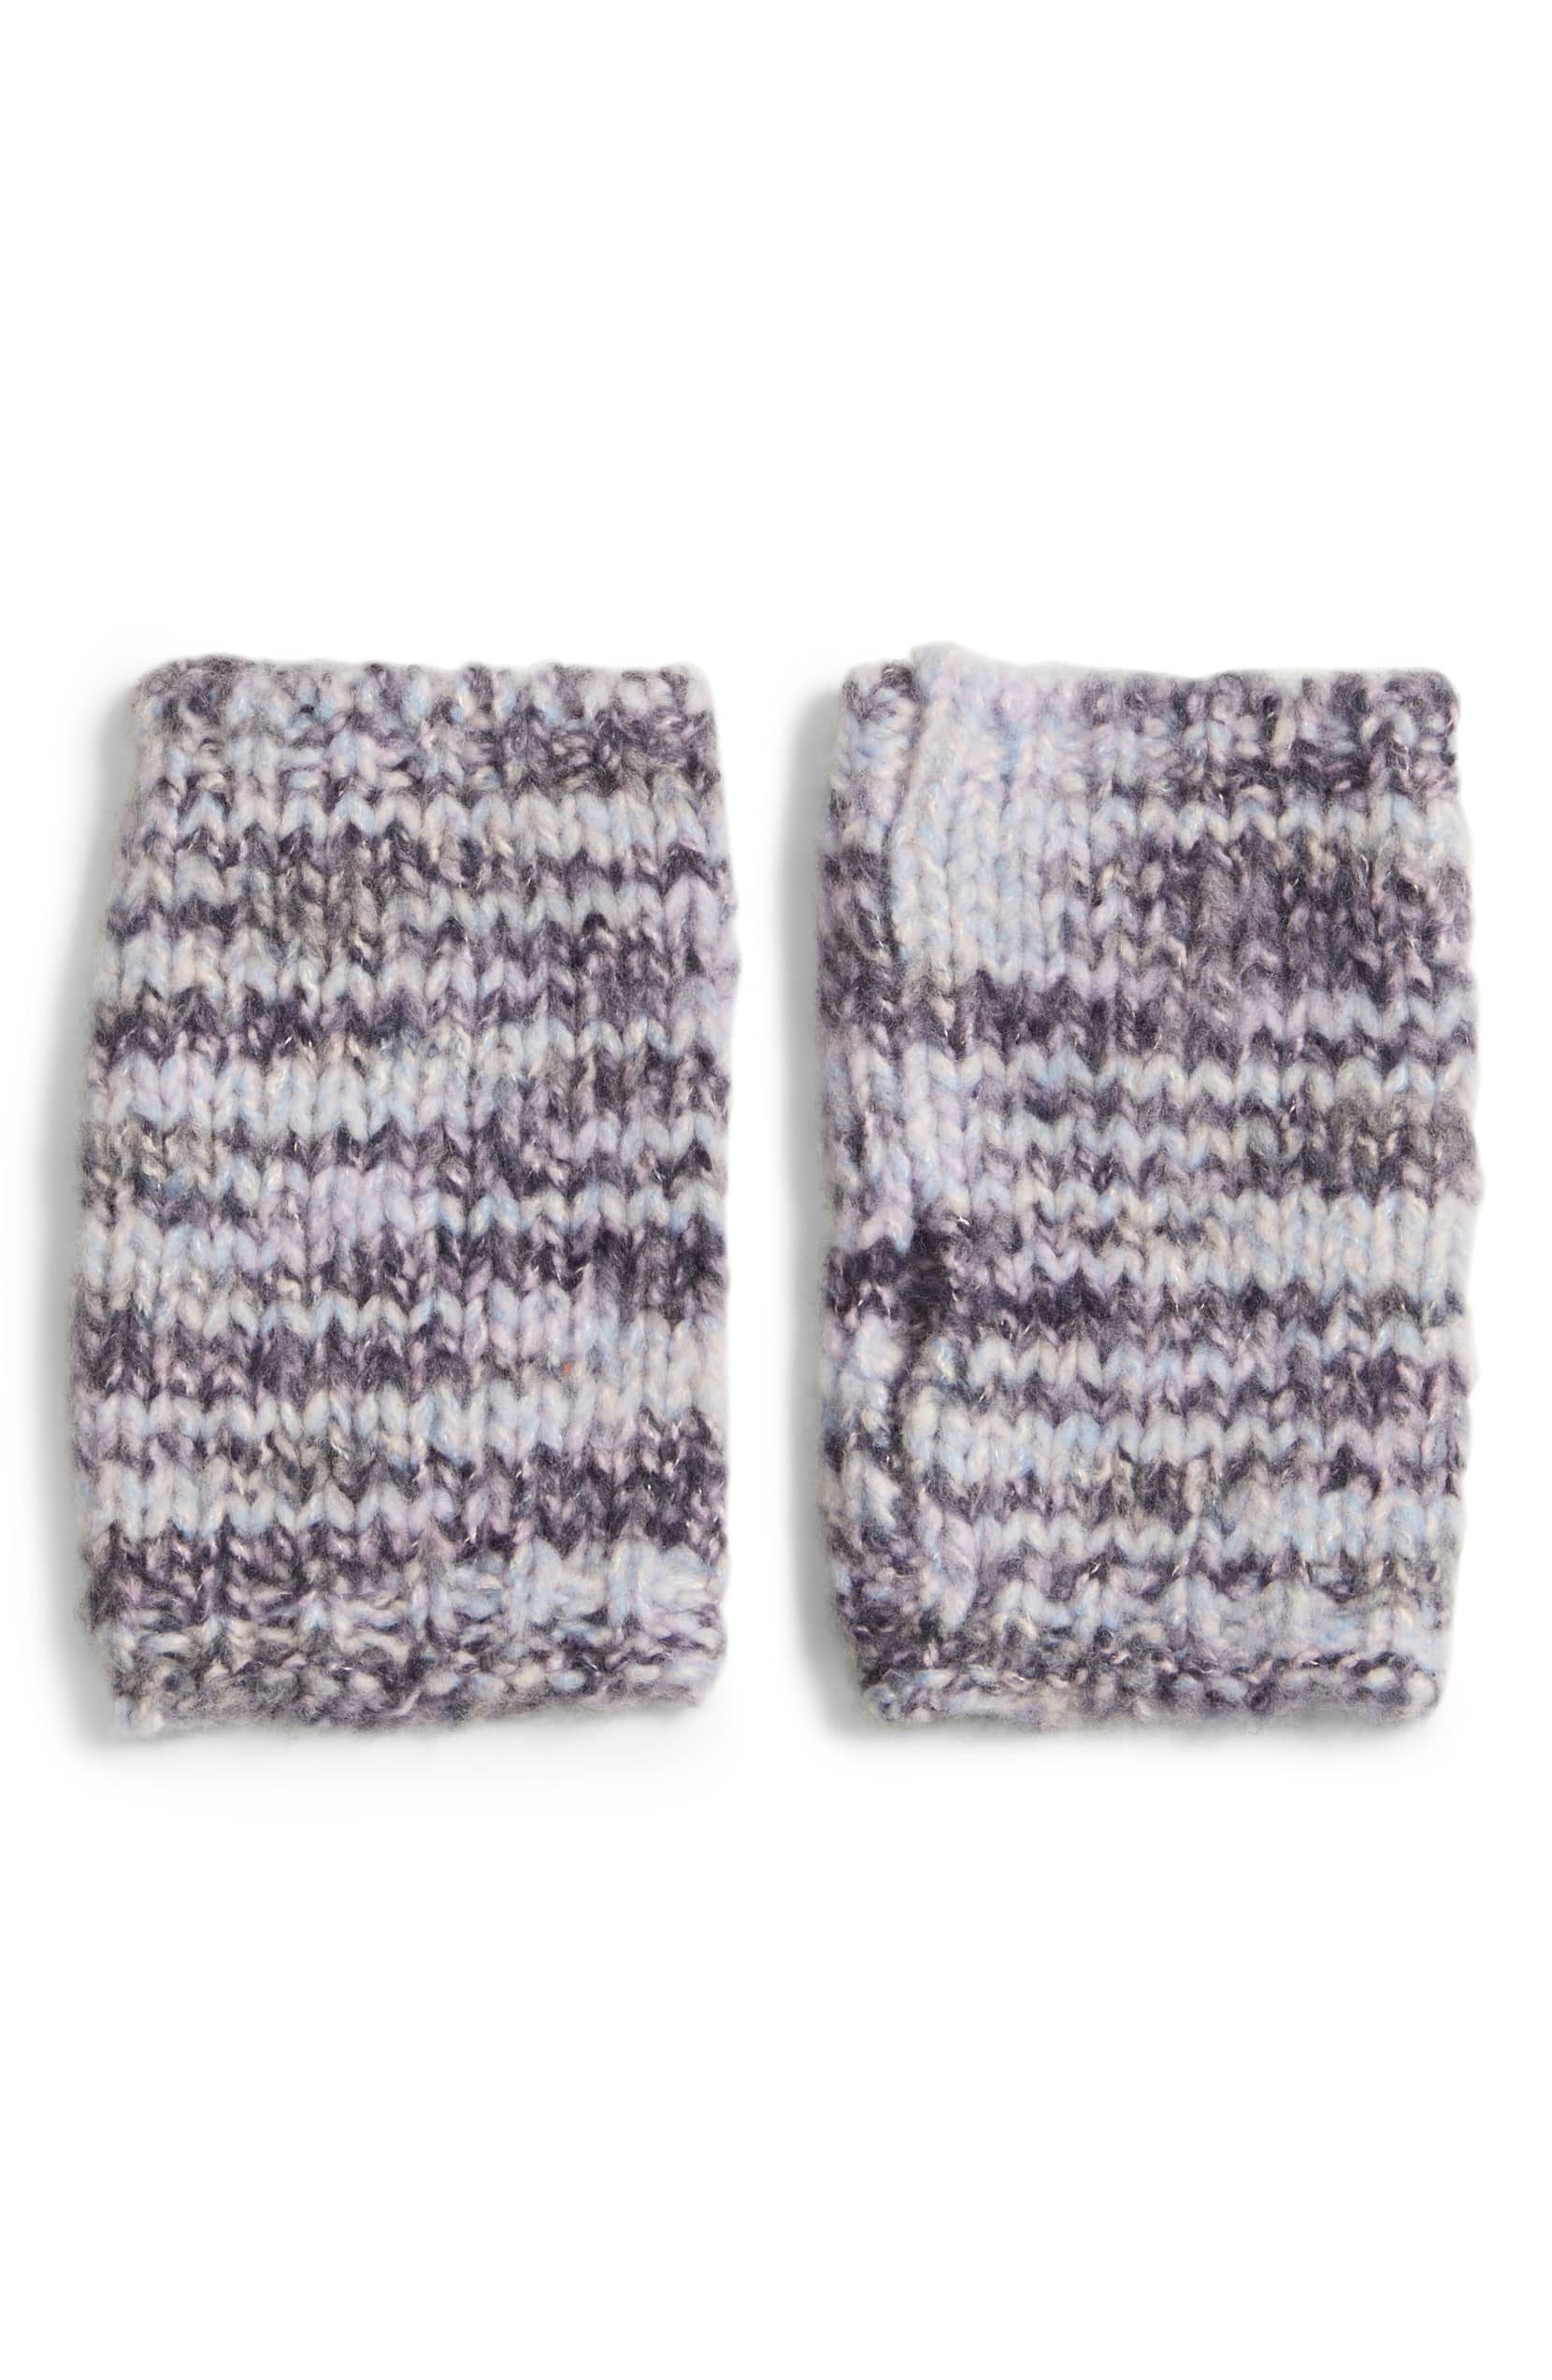 Merino Wool Glovelettes Eileen Fisher Fingerless Gloves for Winter